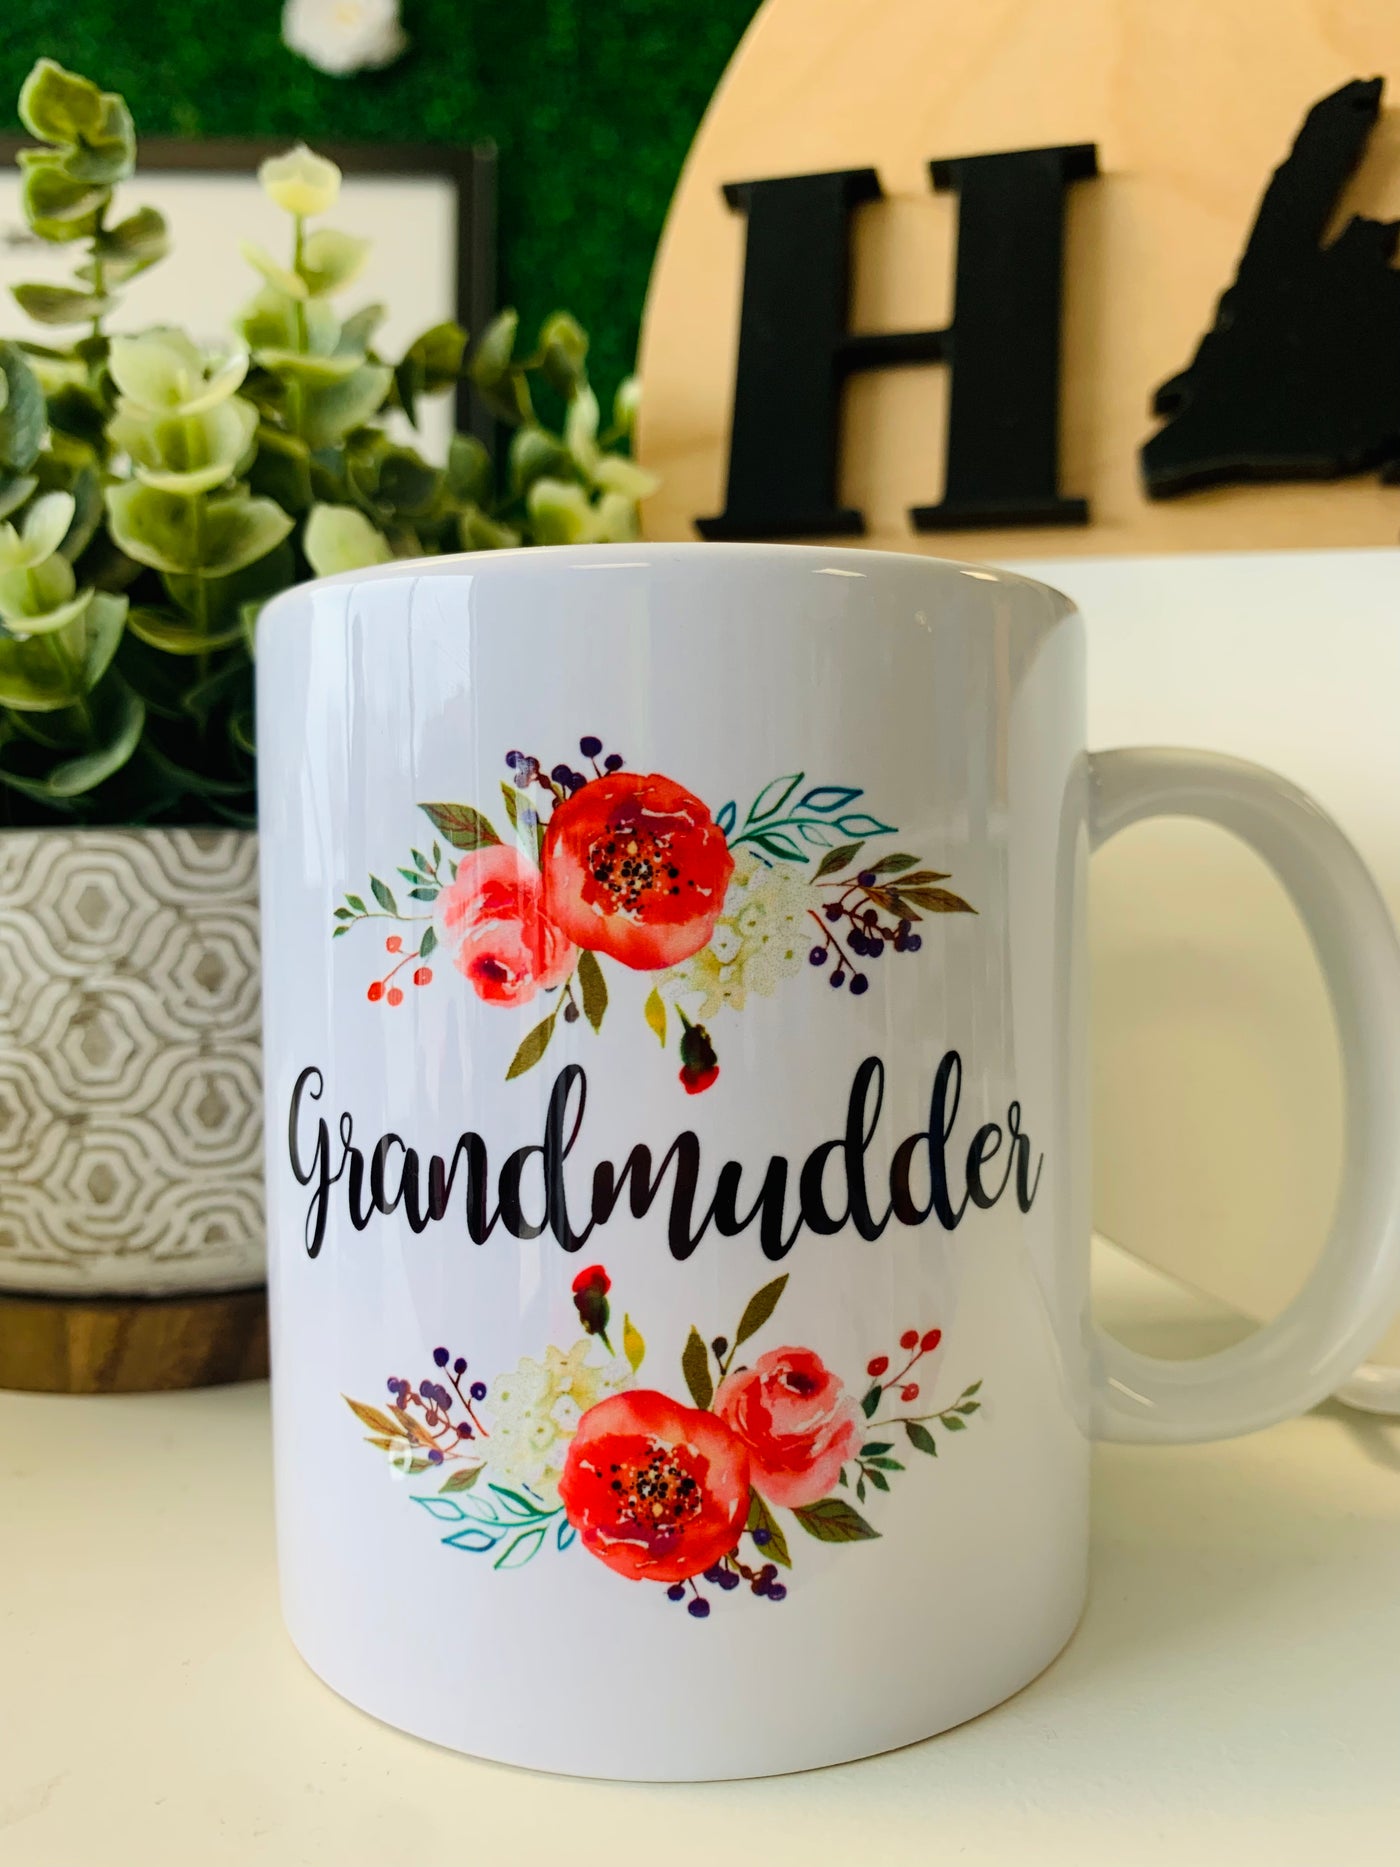 "Grandmudder" Floral Mug